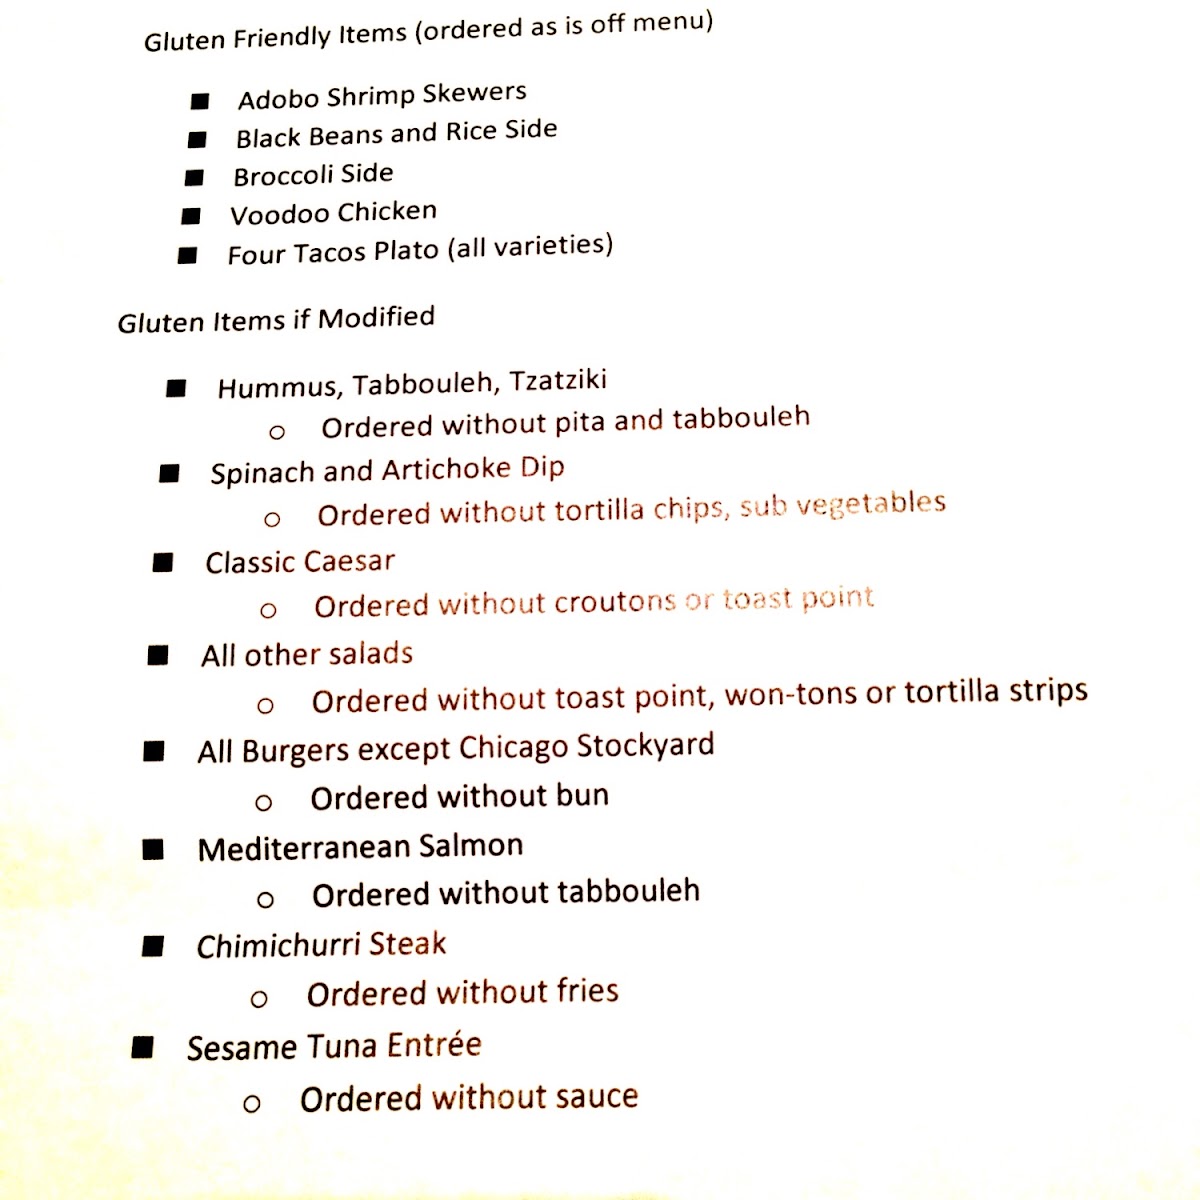 GF menu as of Jan 2013